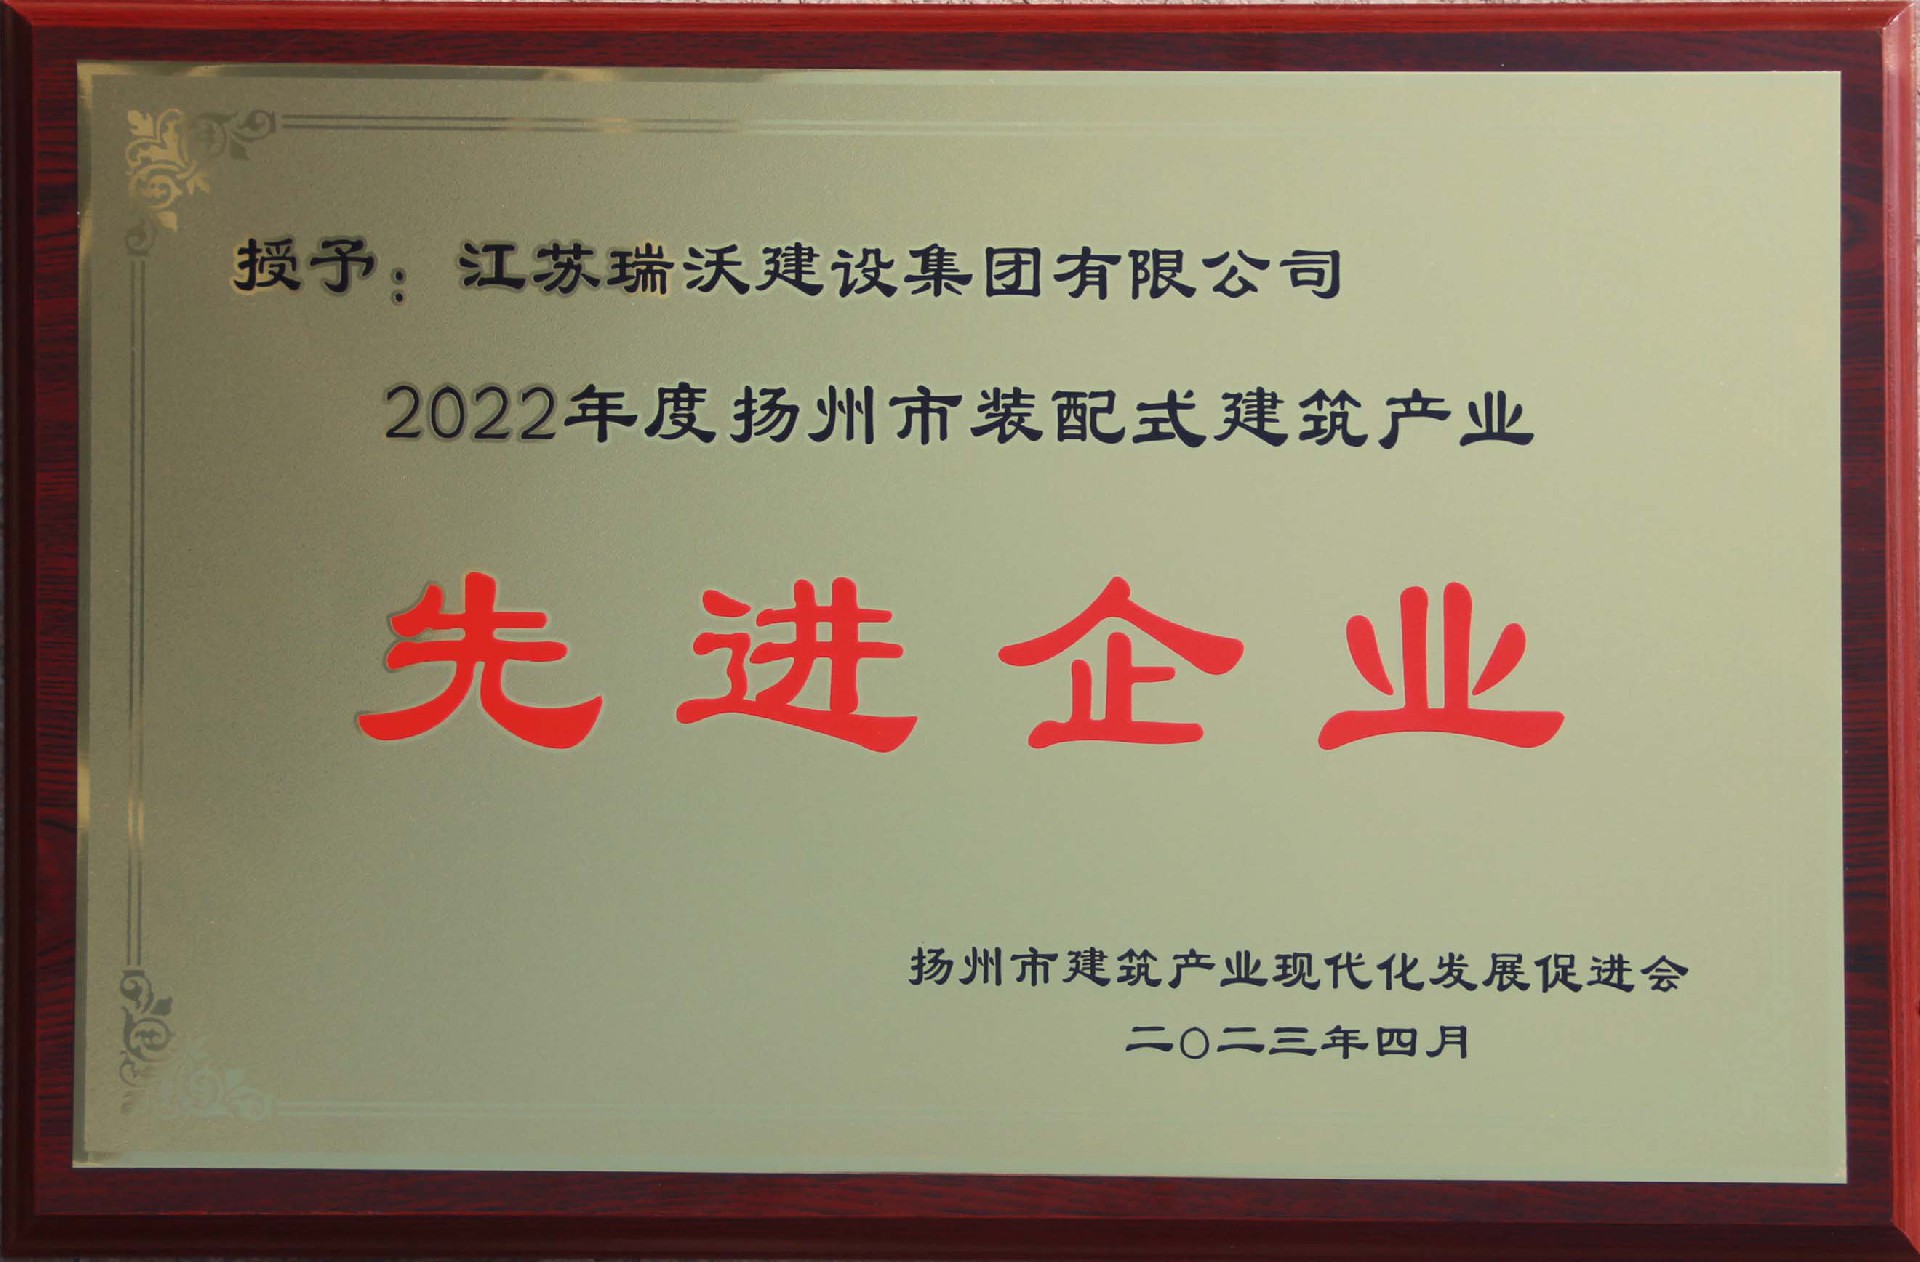 2022年度扬州装配式建筑产业先进企业